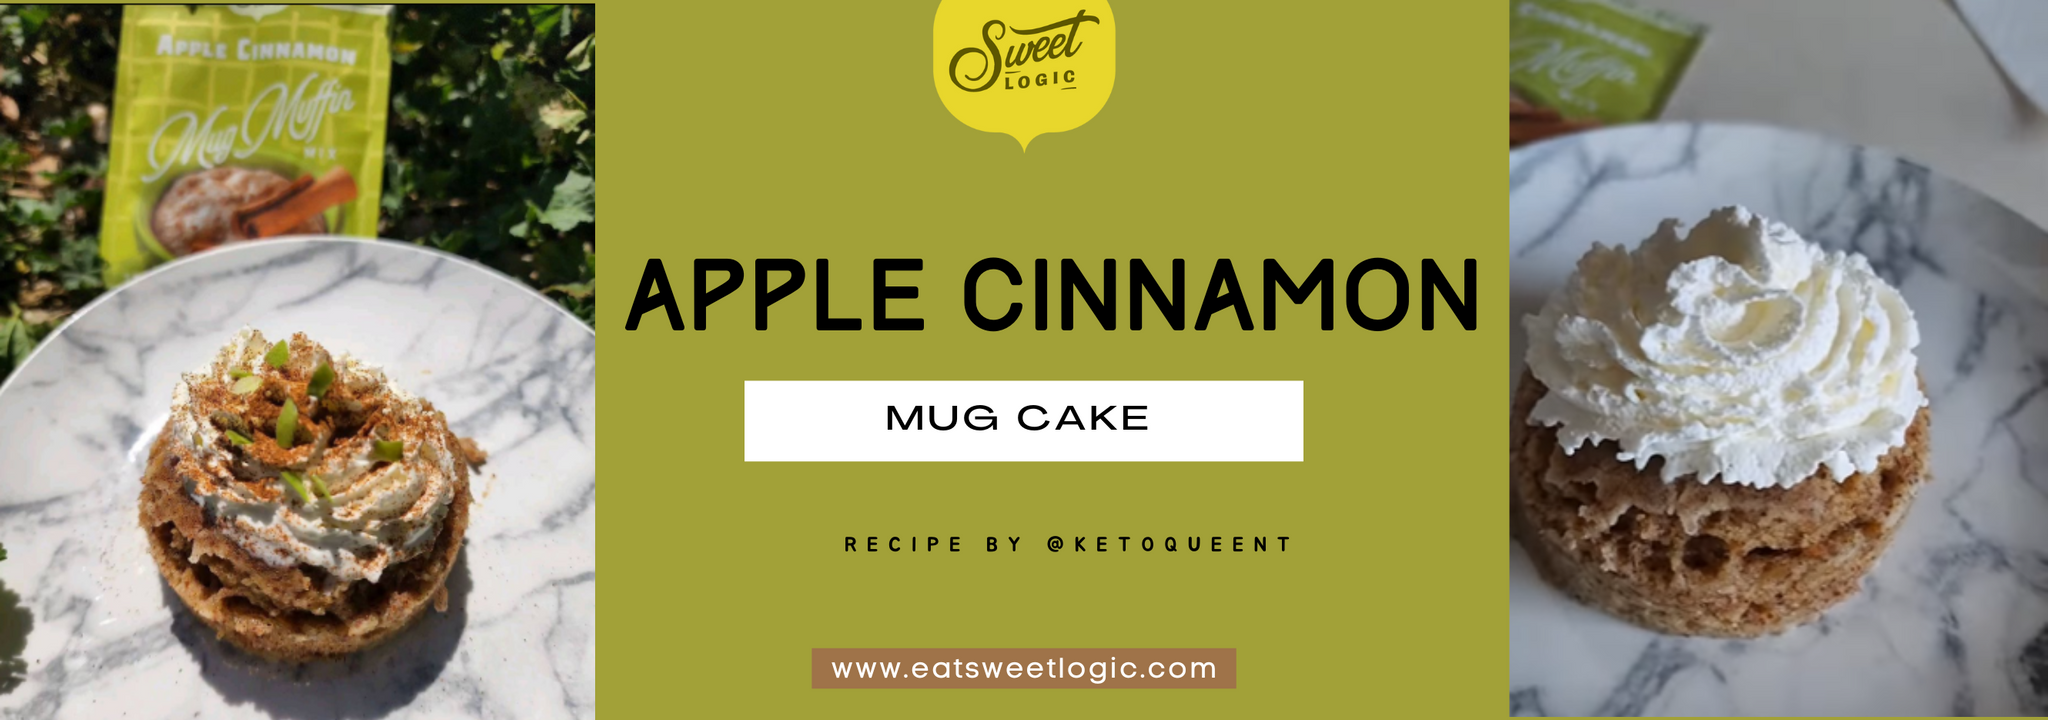 Apple Cinnamon Mug Cake